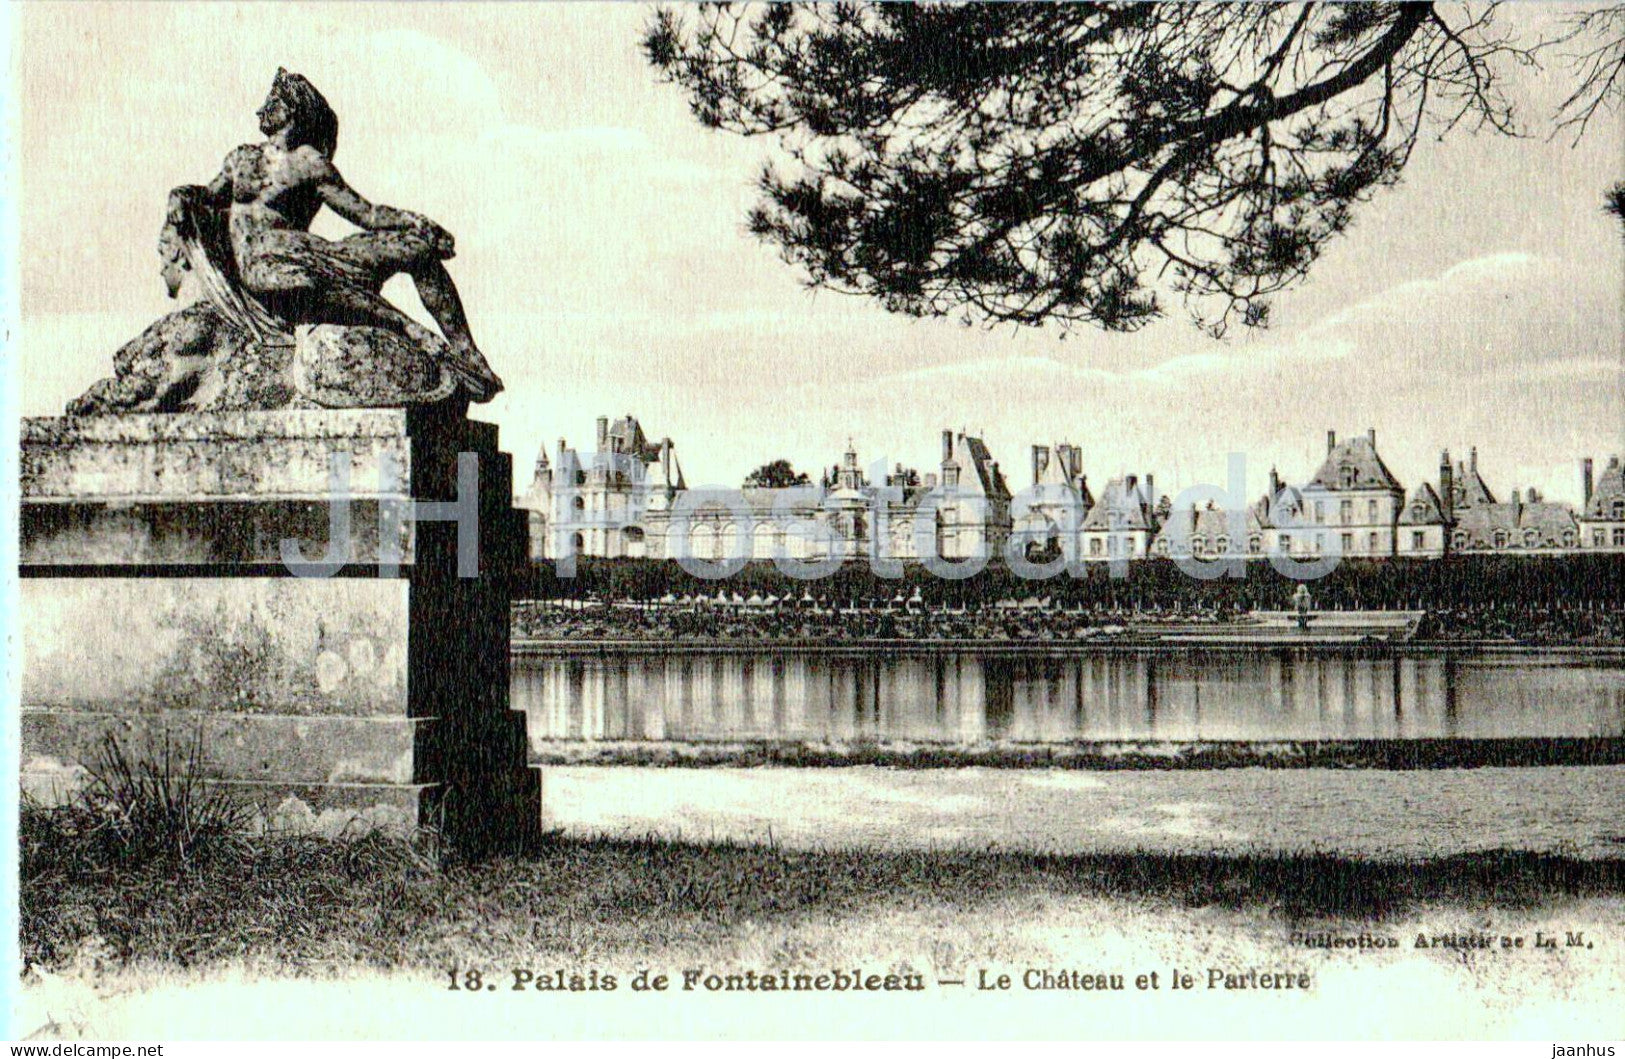 Palais de Fontainebleau - Le Chateau et le Parterre - 18 - old postcard - France - unused - JH Postcards